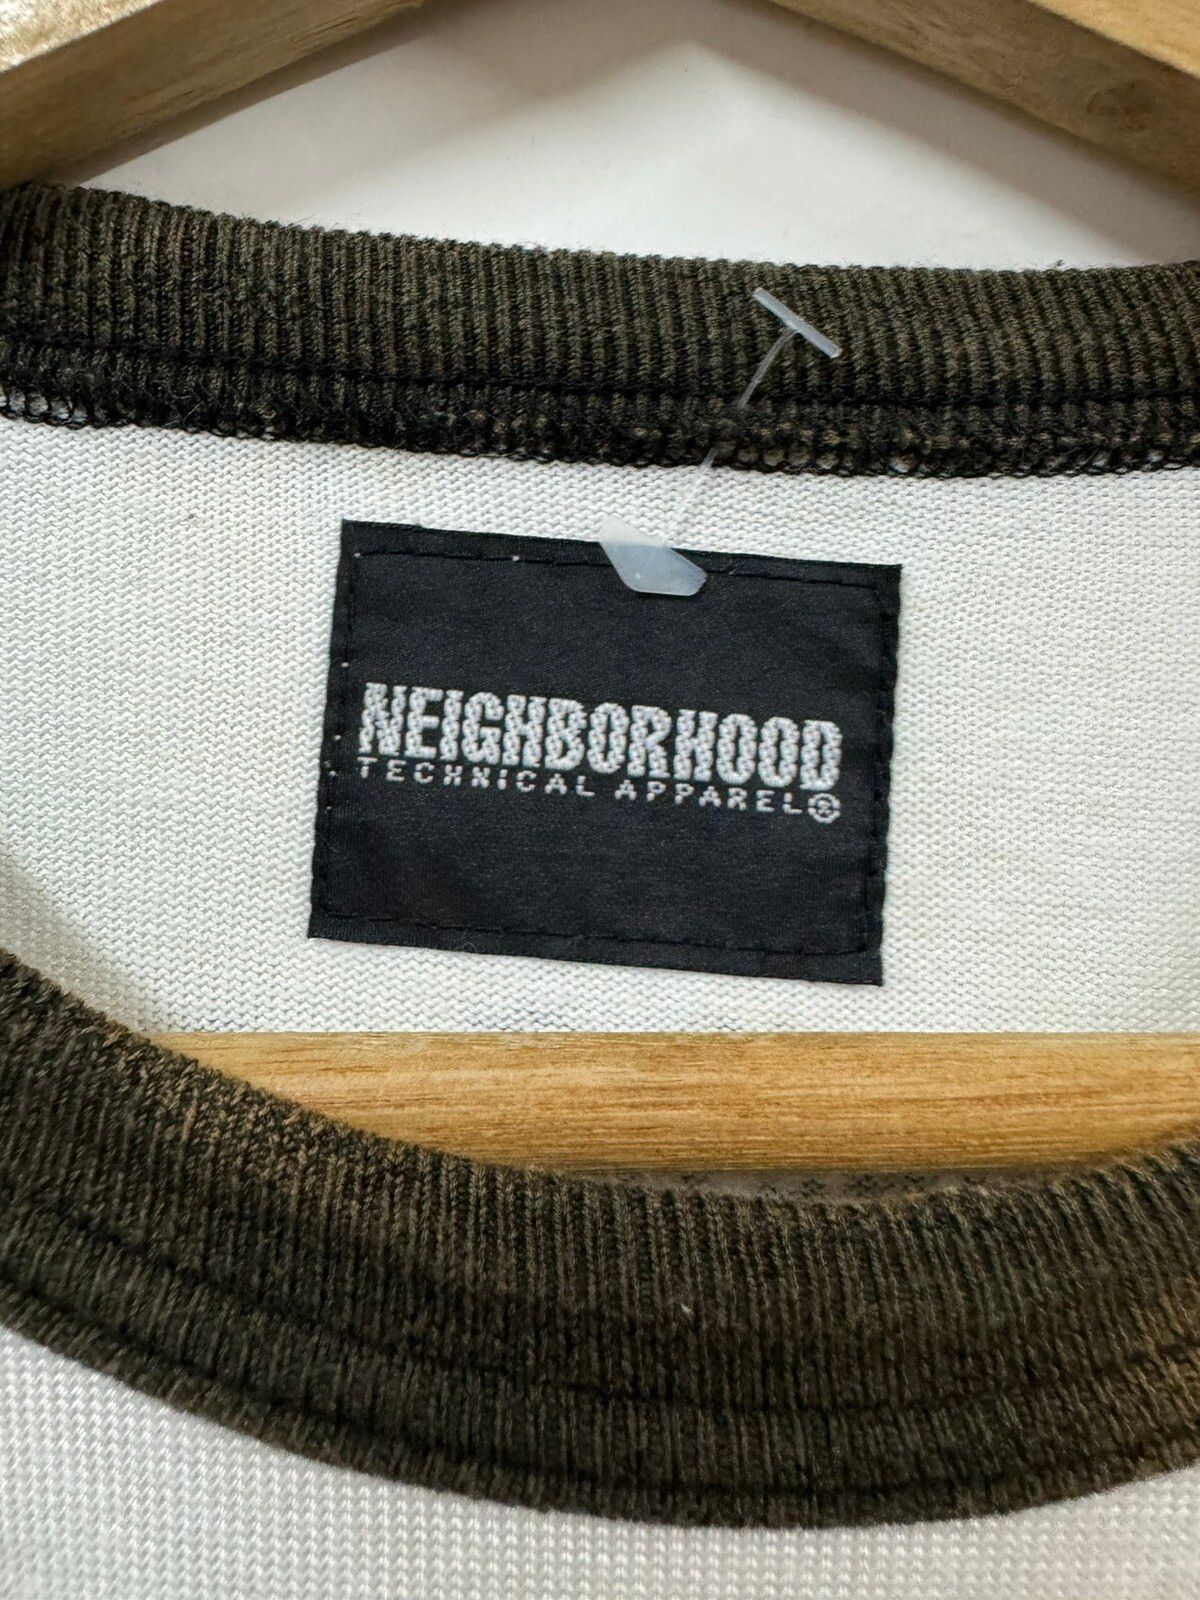 Neighborhood Raglan Vecindario Shirt - 19